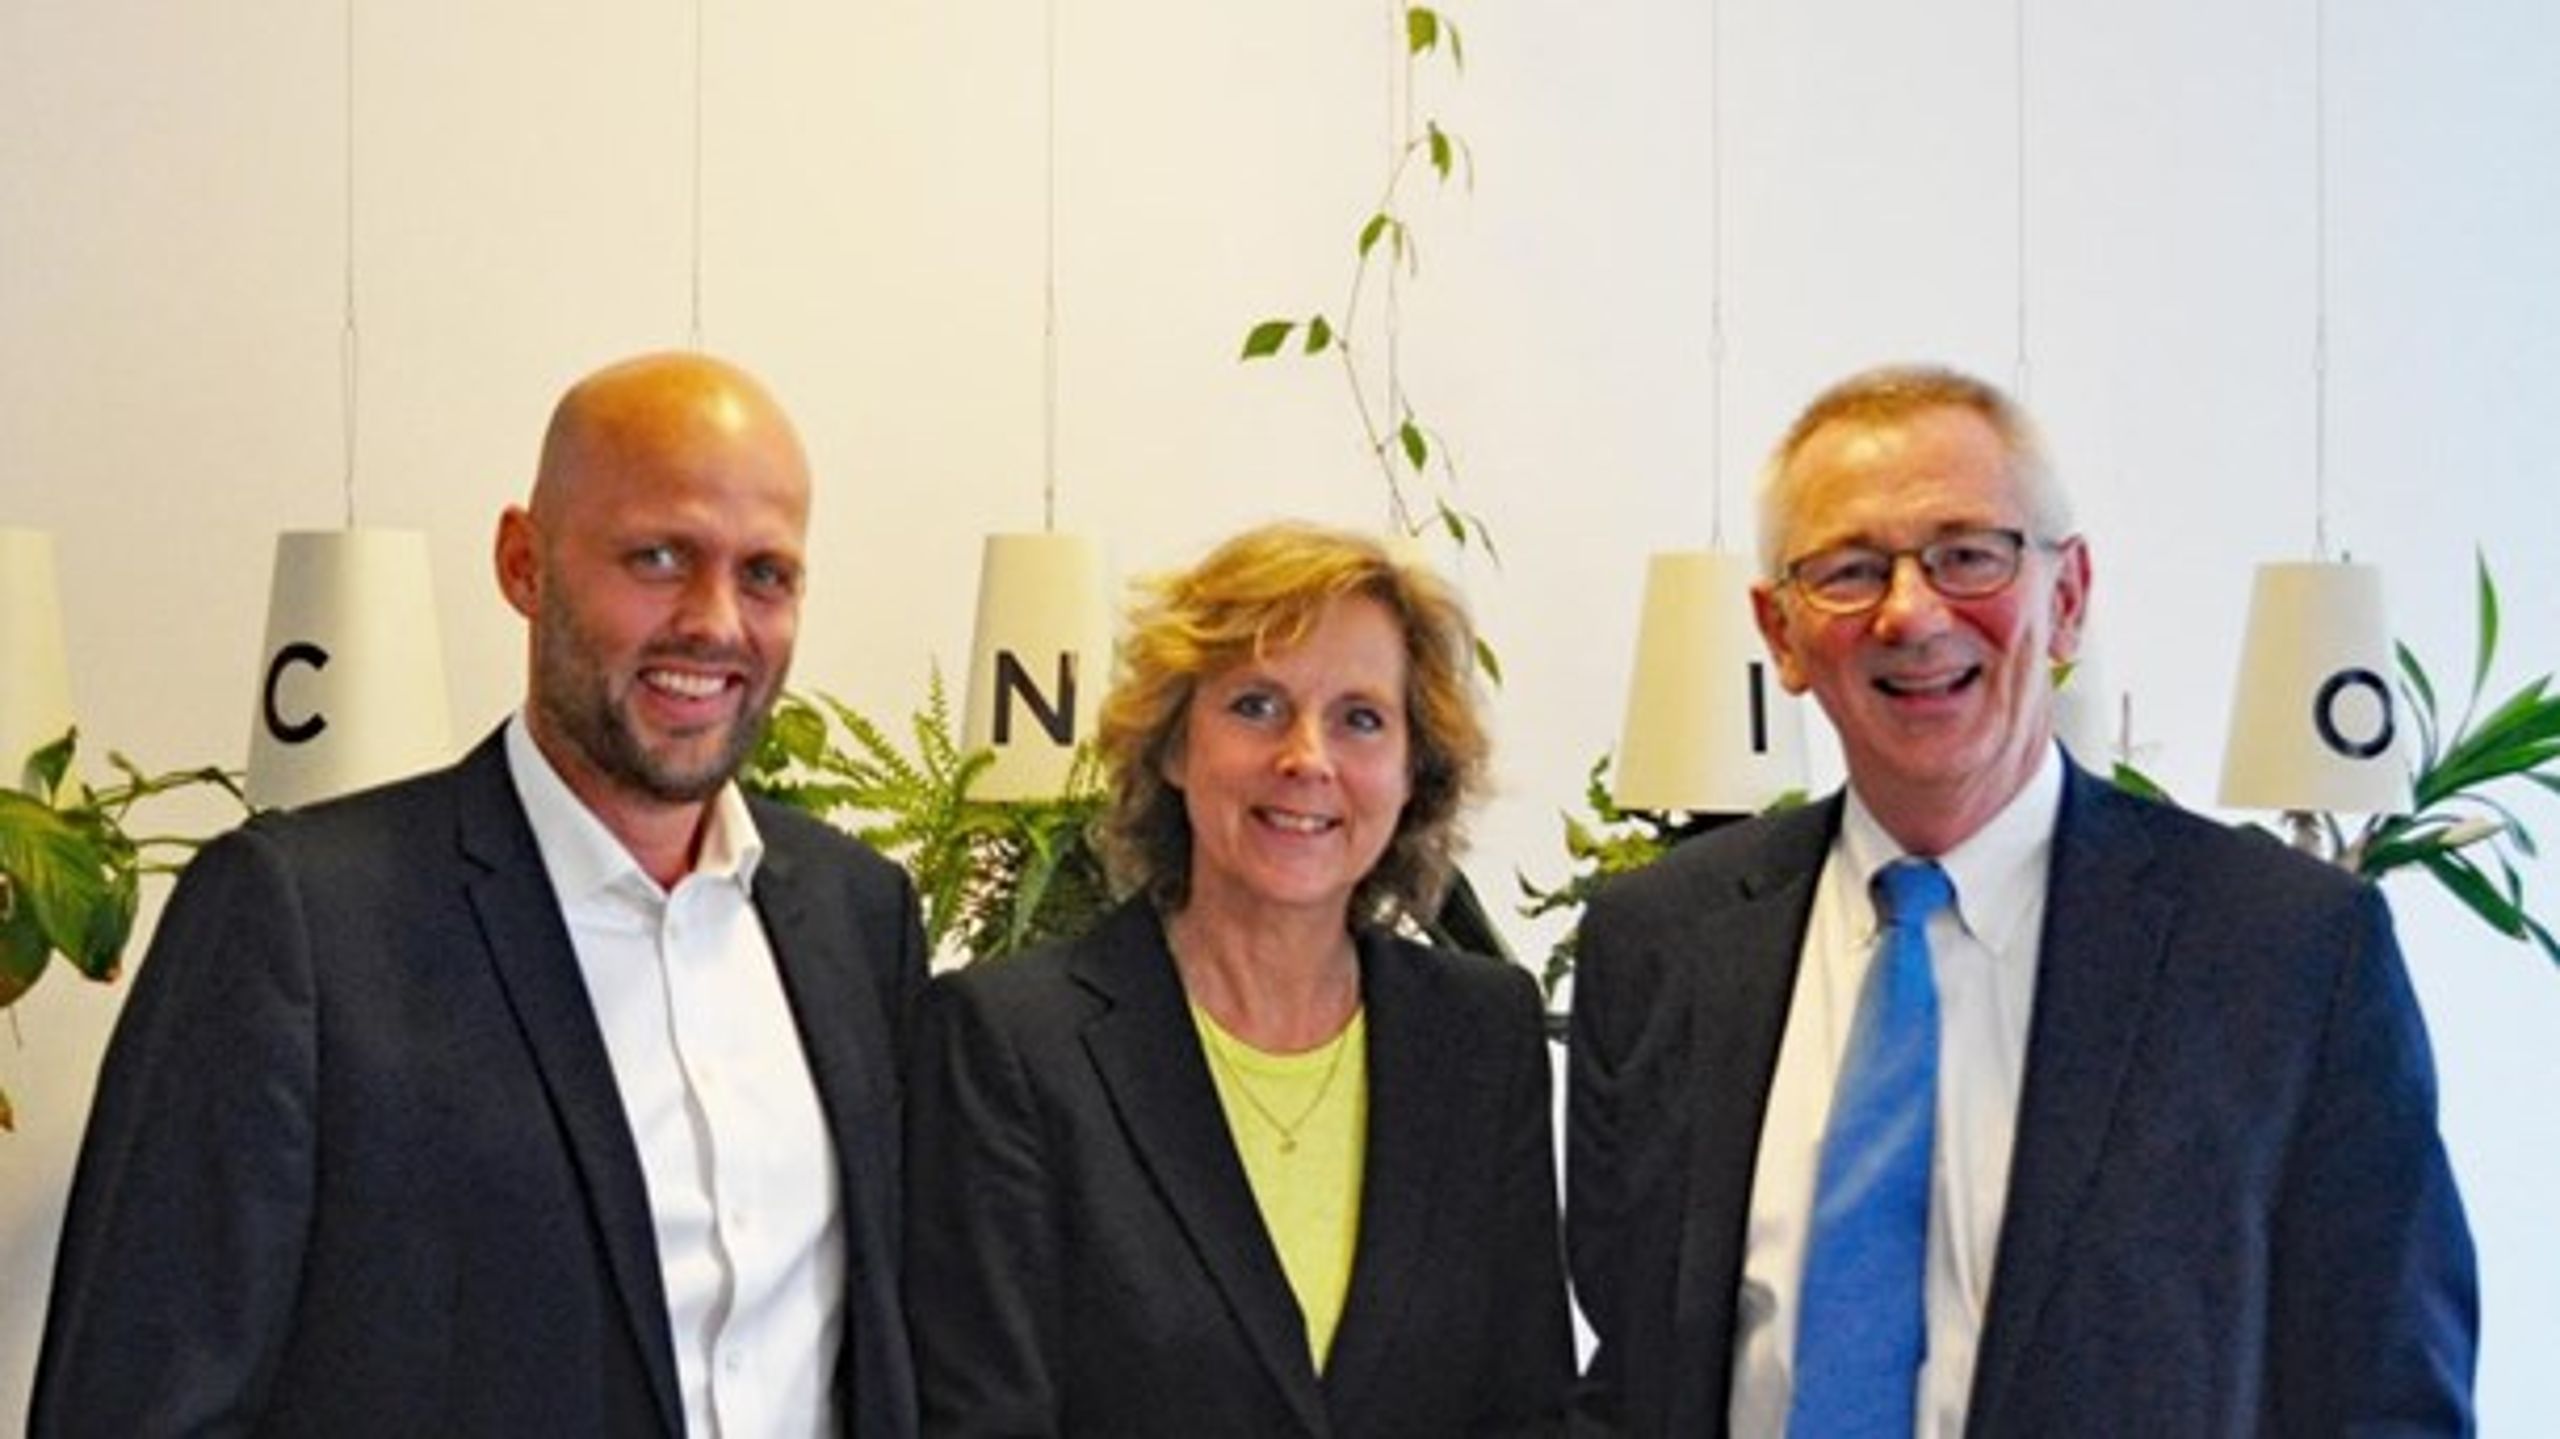 Concitos direktør, Christian Ibsen, sammen med formand Connie Hedegaard og WRI's præsident, Andrew Steer.